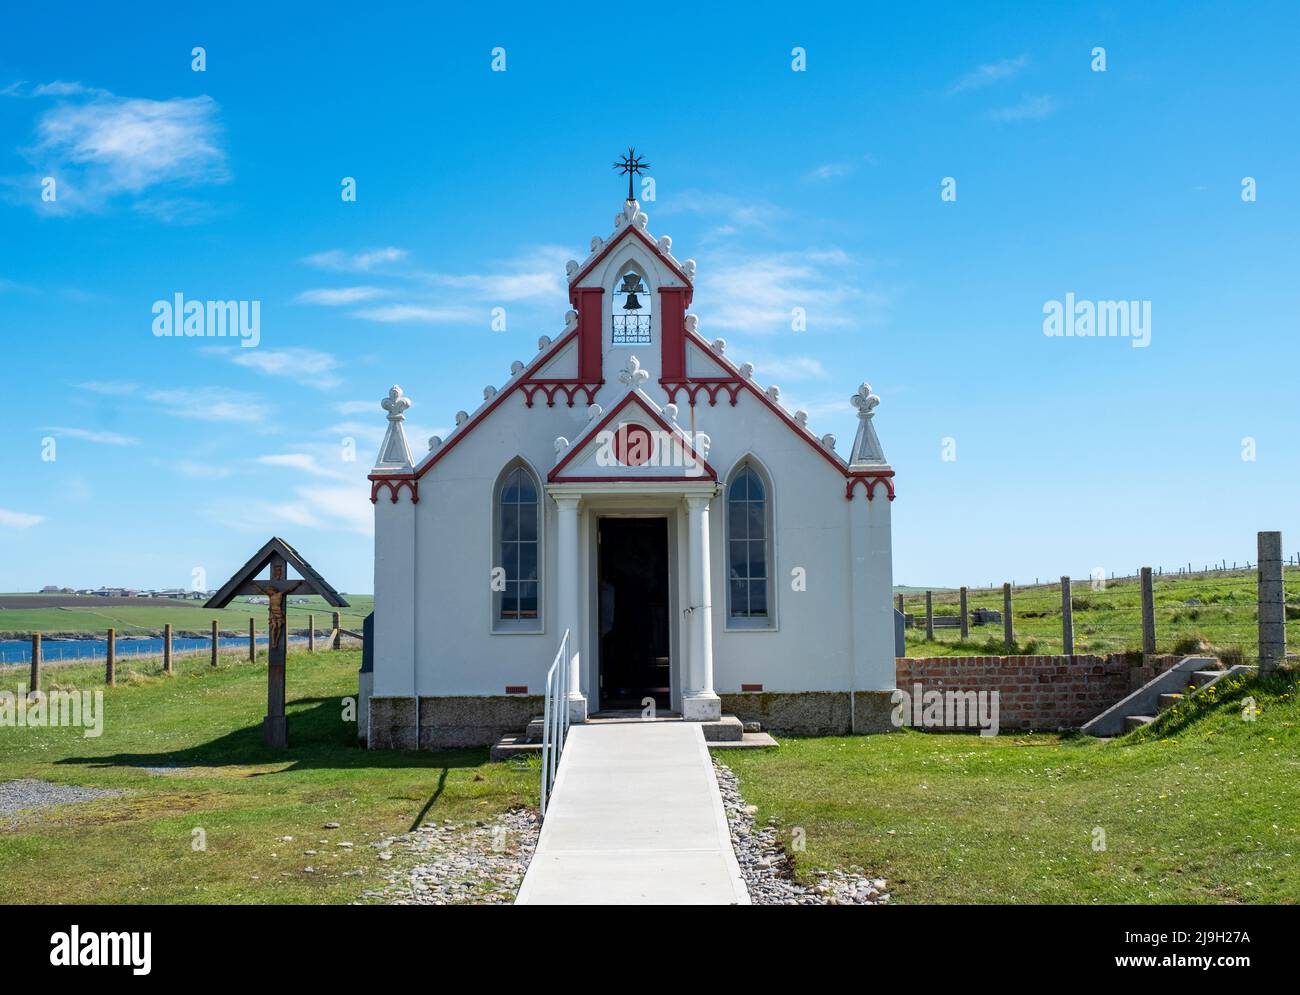 Die italienischen Kapelle, Orkney. Die Kapelle wurde von italienischen Kriegsgefangenen im Zweiten Weltkrieg bei Lamm Holm, Orkney, Schottland, Großbritannien gebaut Stockfoto